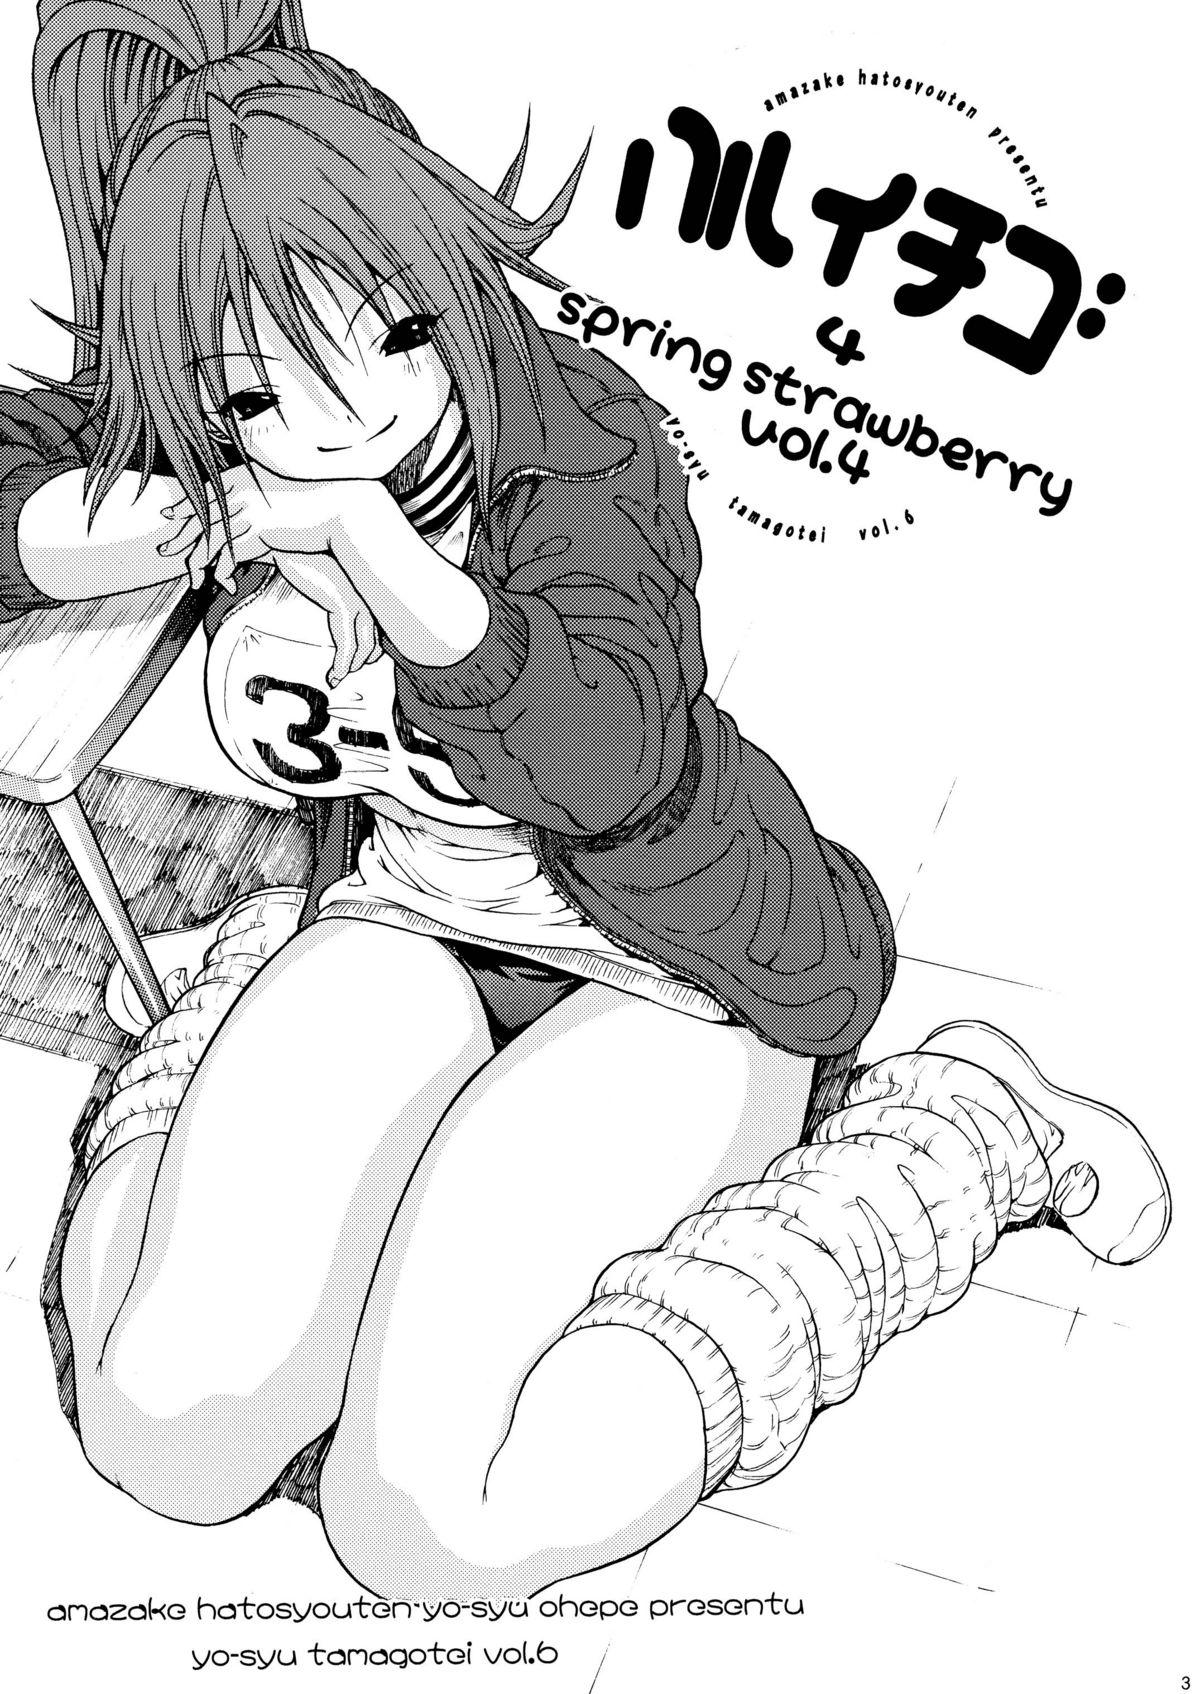 Haru Ichigo Vol. 4 - Spring Strawberry Vol. 4 1